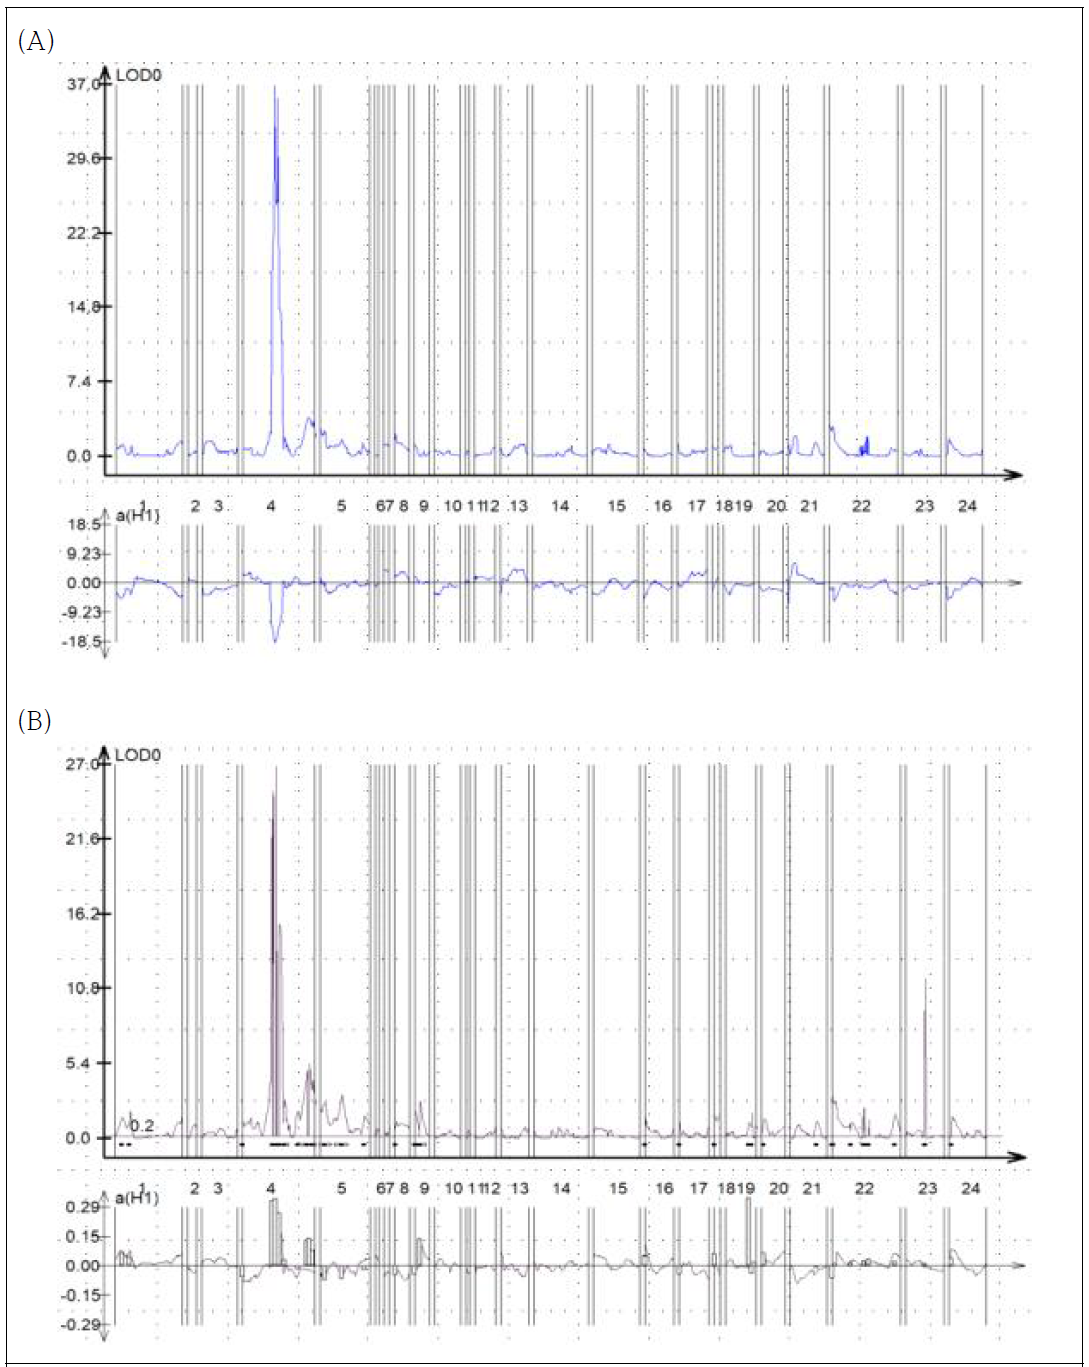 흰가루병 검정 결과 중 포자형성 여부를 적용한 QTL 분석 결과. (A) 포자형성율(%) 적용한 QTL 분석. (B) 포자형성율(%)에 따른 저항성 여부를 질적형질로 적용한 QTL 분석. 둘로 나누어진 연관군 때문에 그래프에 염색체 수가 24 로 나타난다. 따라서 그래프의 4 번 염색체는 실제로는 3 번 염색체 조립이다